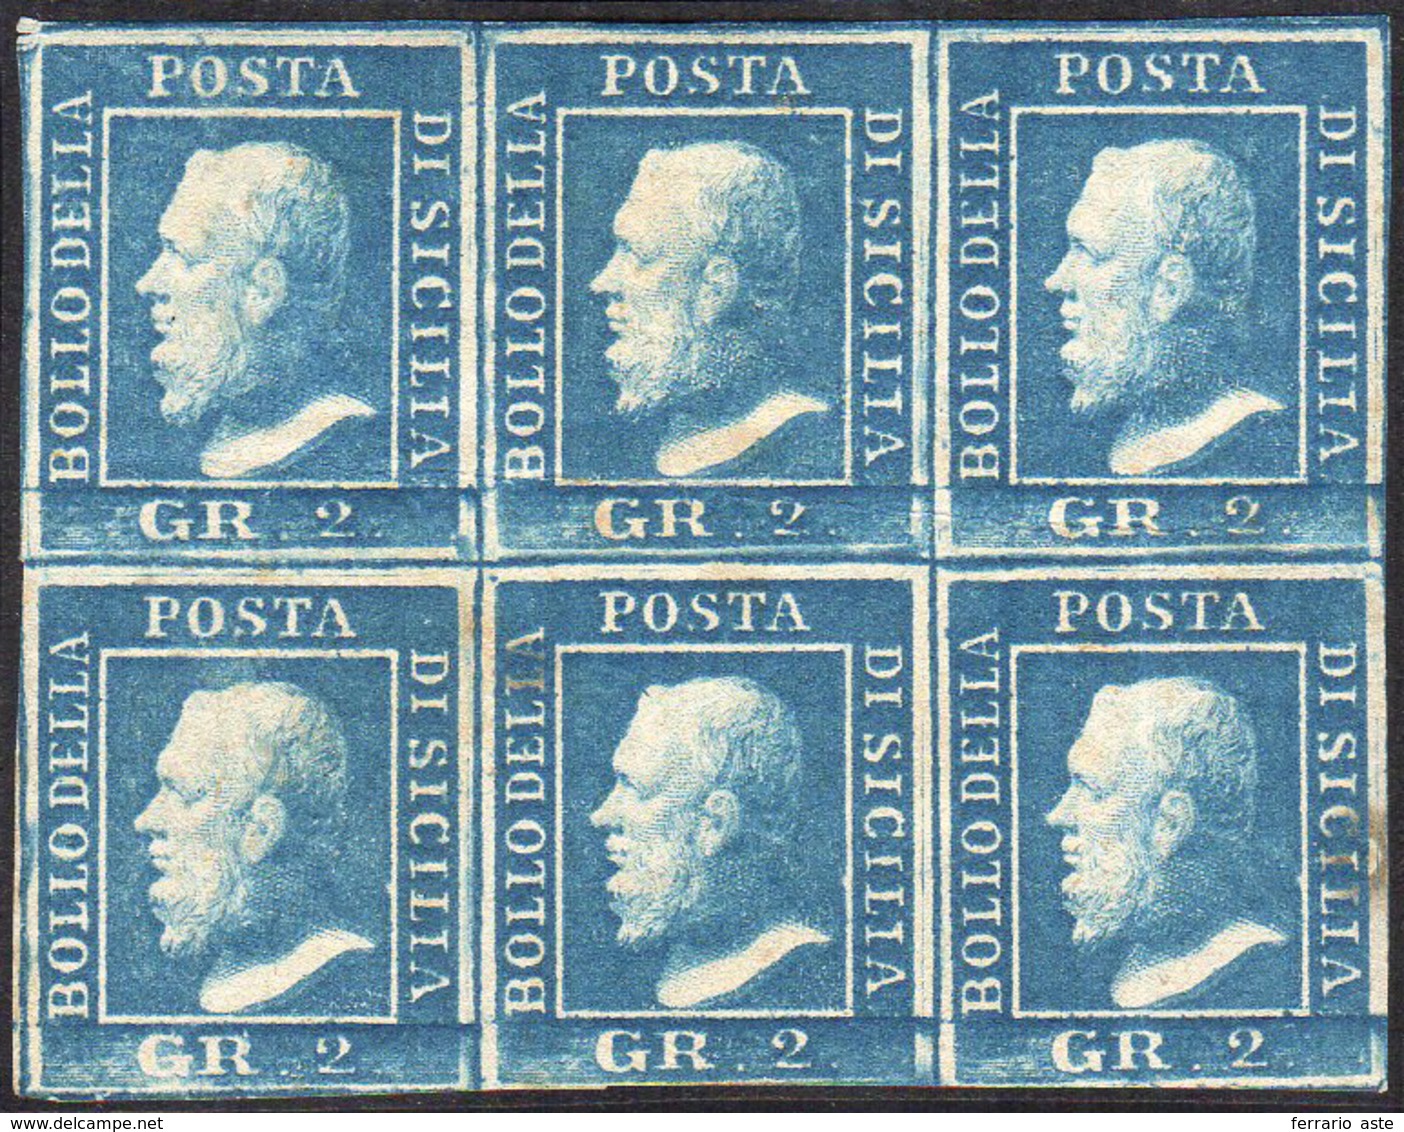 1859 - 2 Grana Azzurro Verdastro, III Tavola, Carta Di Napoli (8b), Eccezionale Blocco Di Sei, Ben M... - Sicily